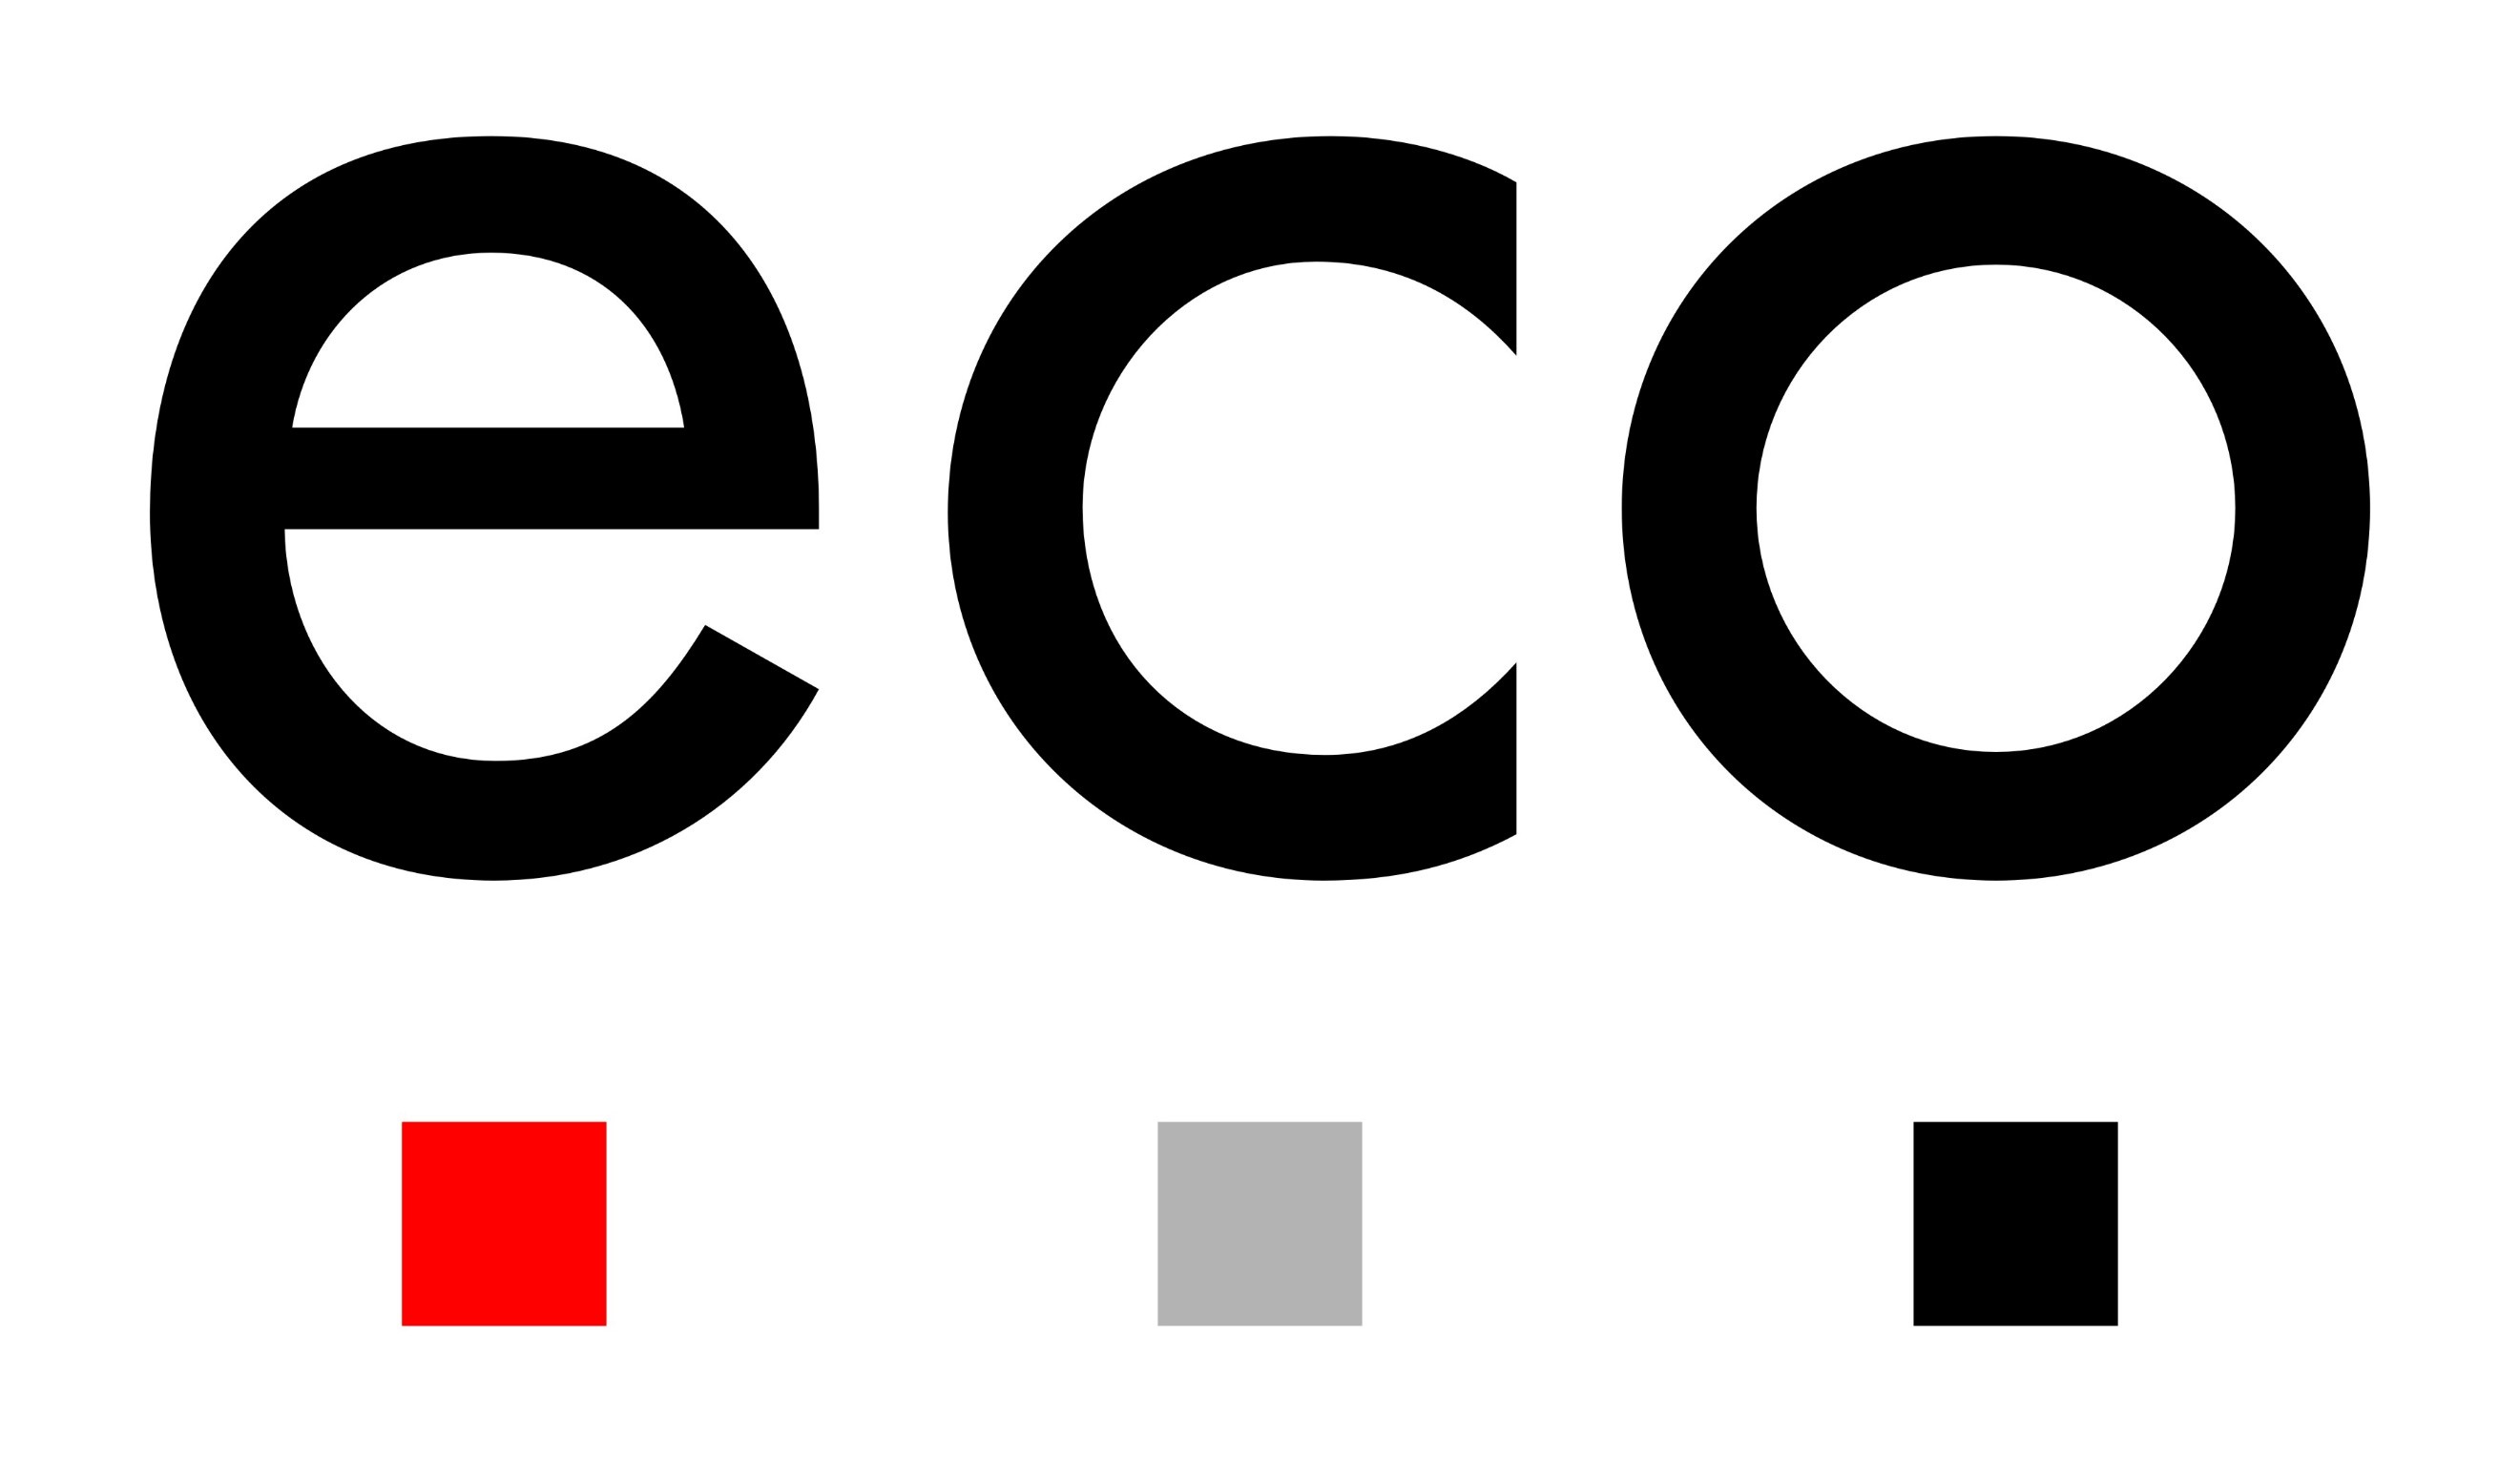 Logo von eco